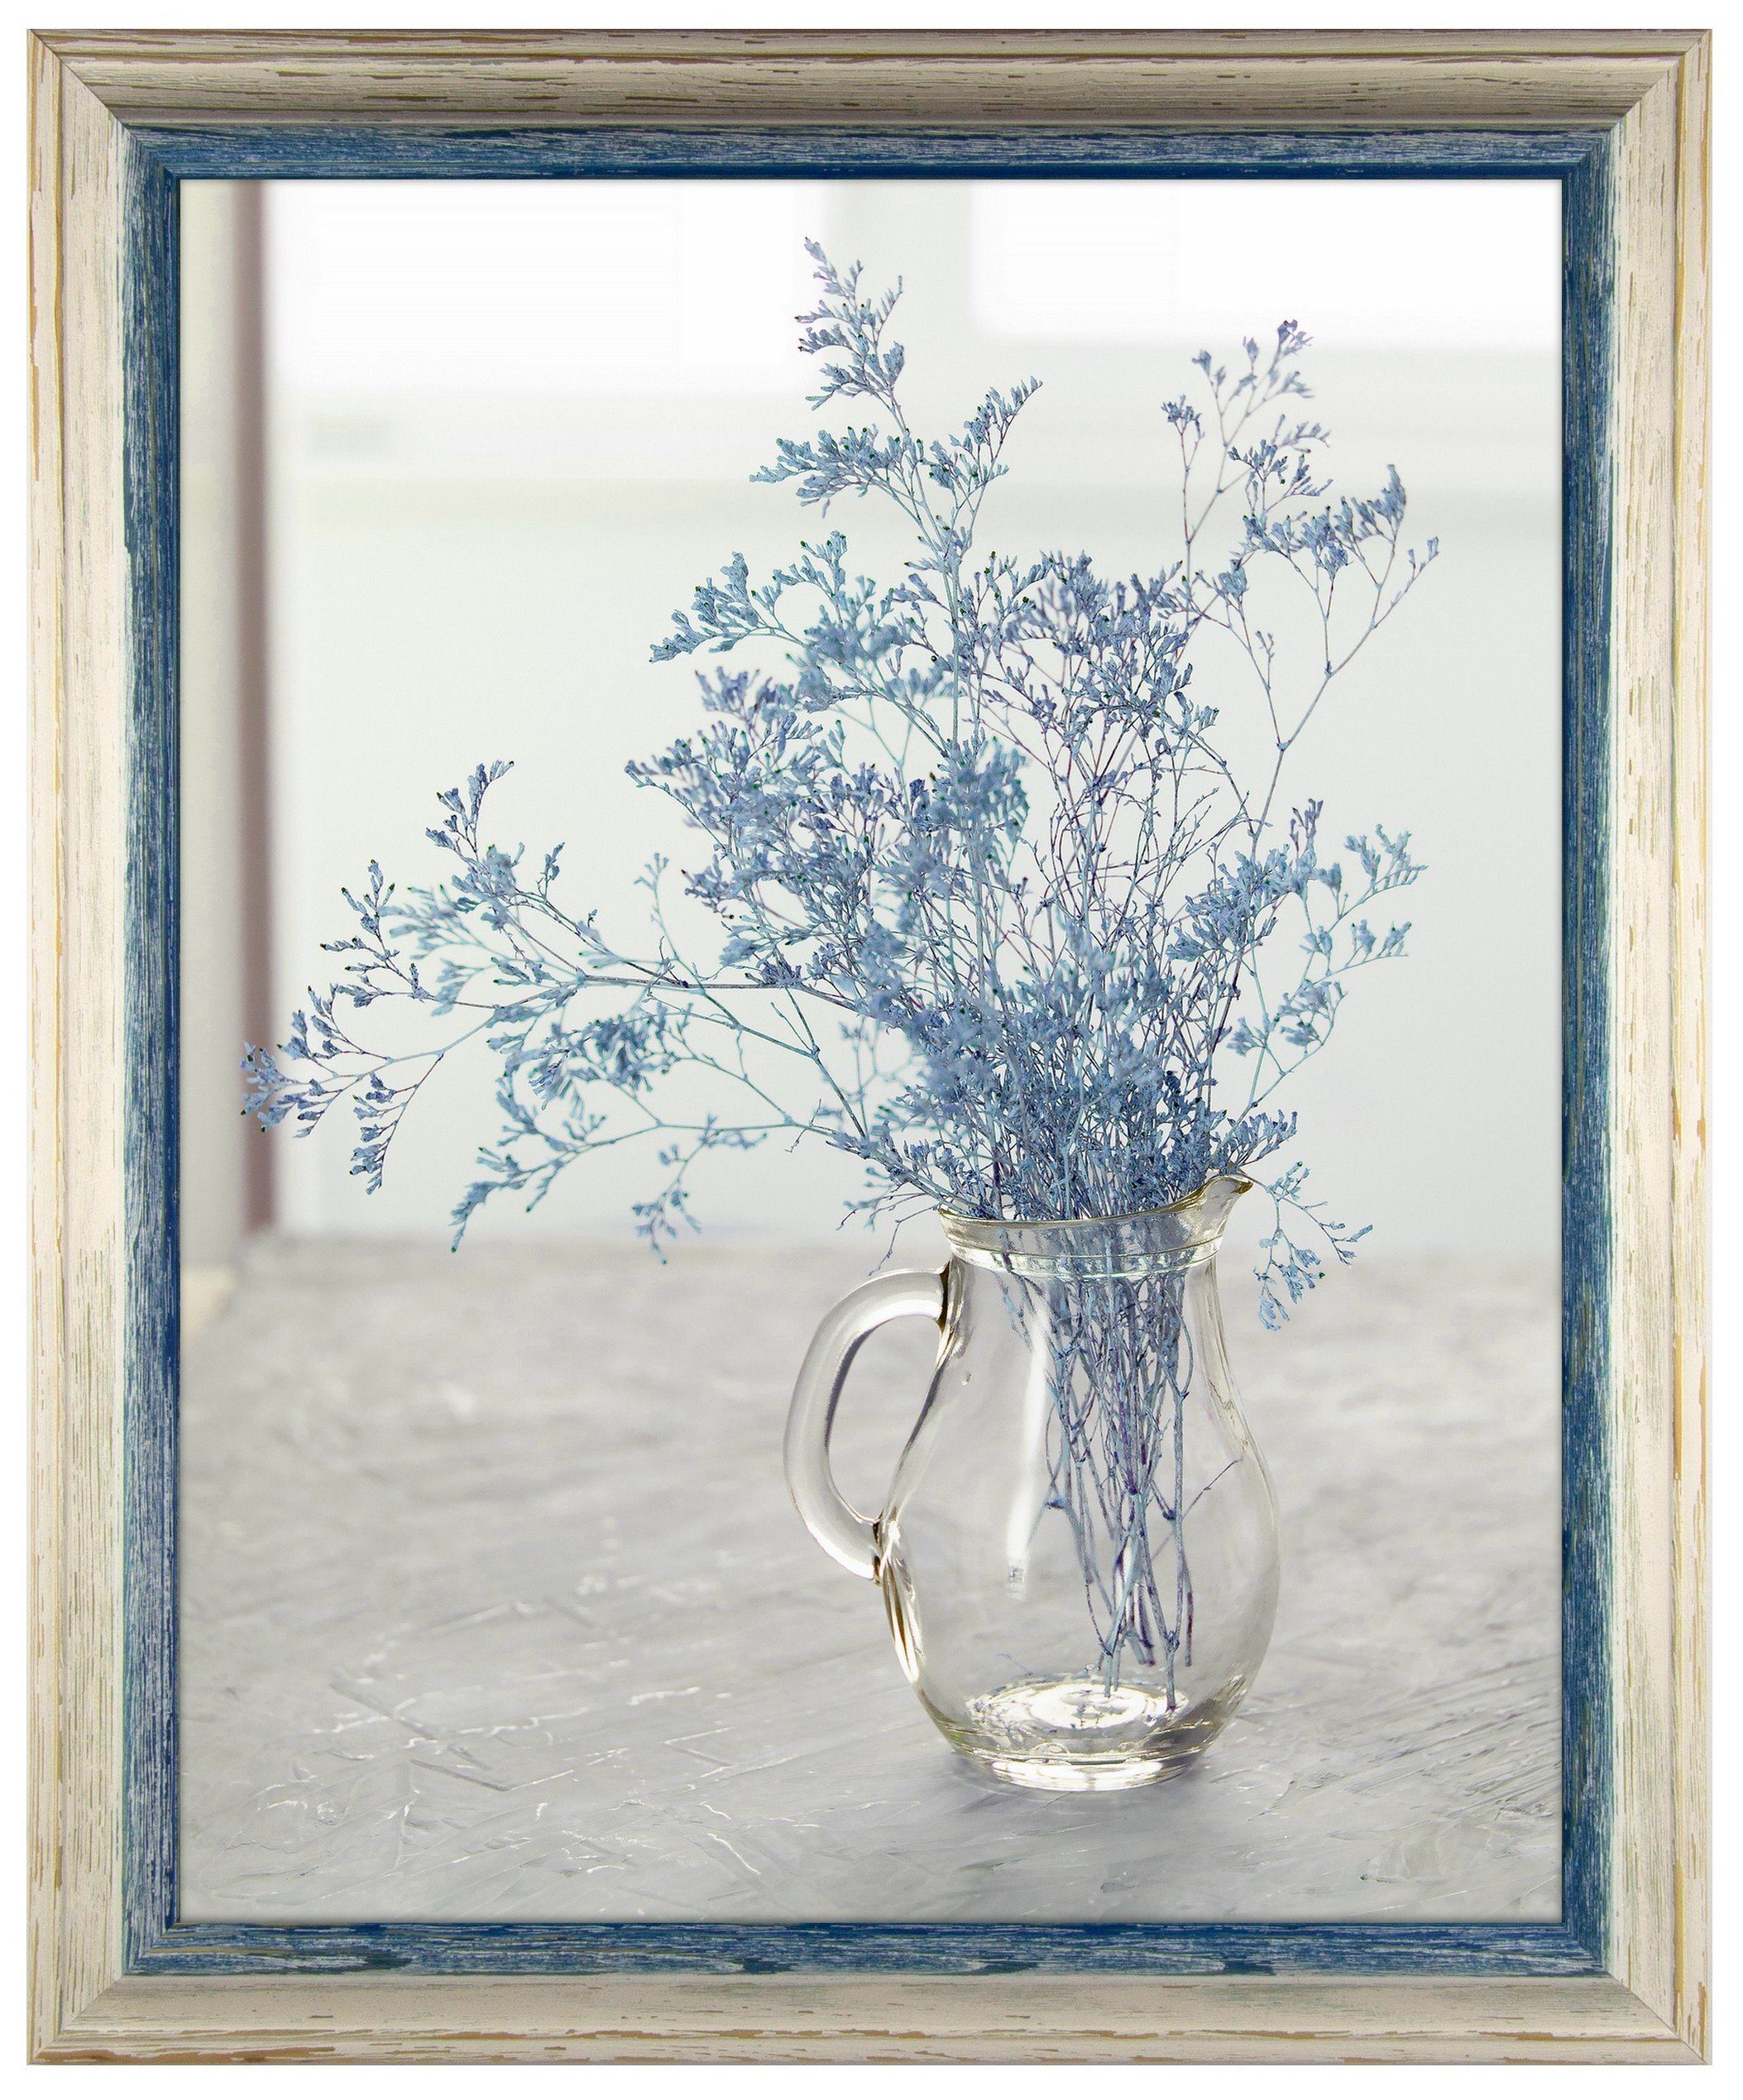 myposterframe Einzelrahmen Artemis cm, Weiß zweifarbig, 21x26 Echtholz (1 Vintage, Stück), Echtholz Blau